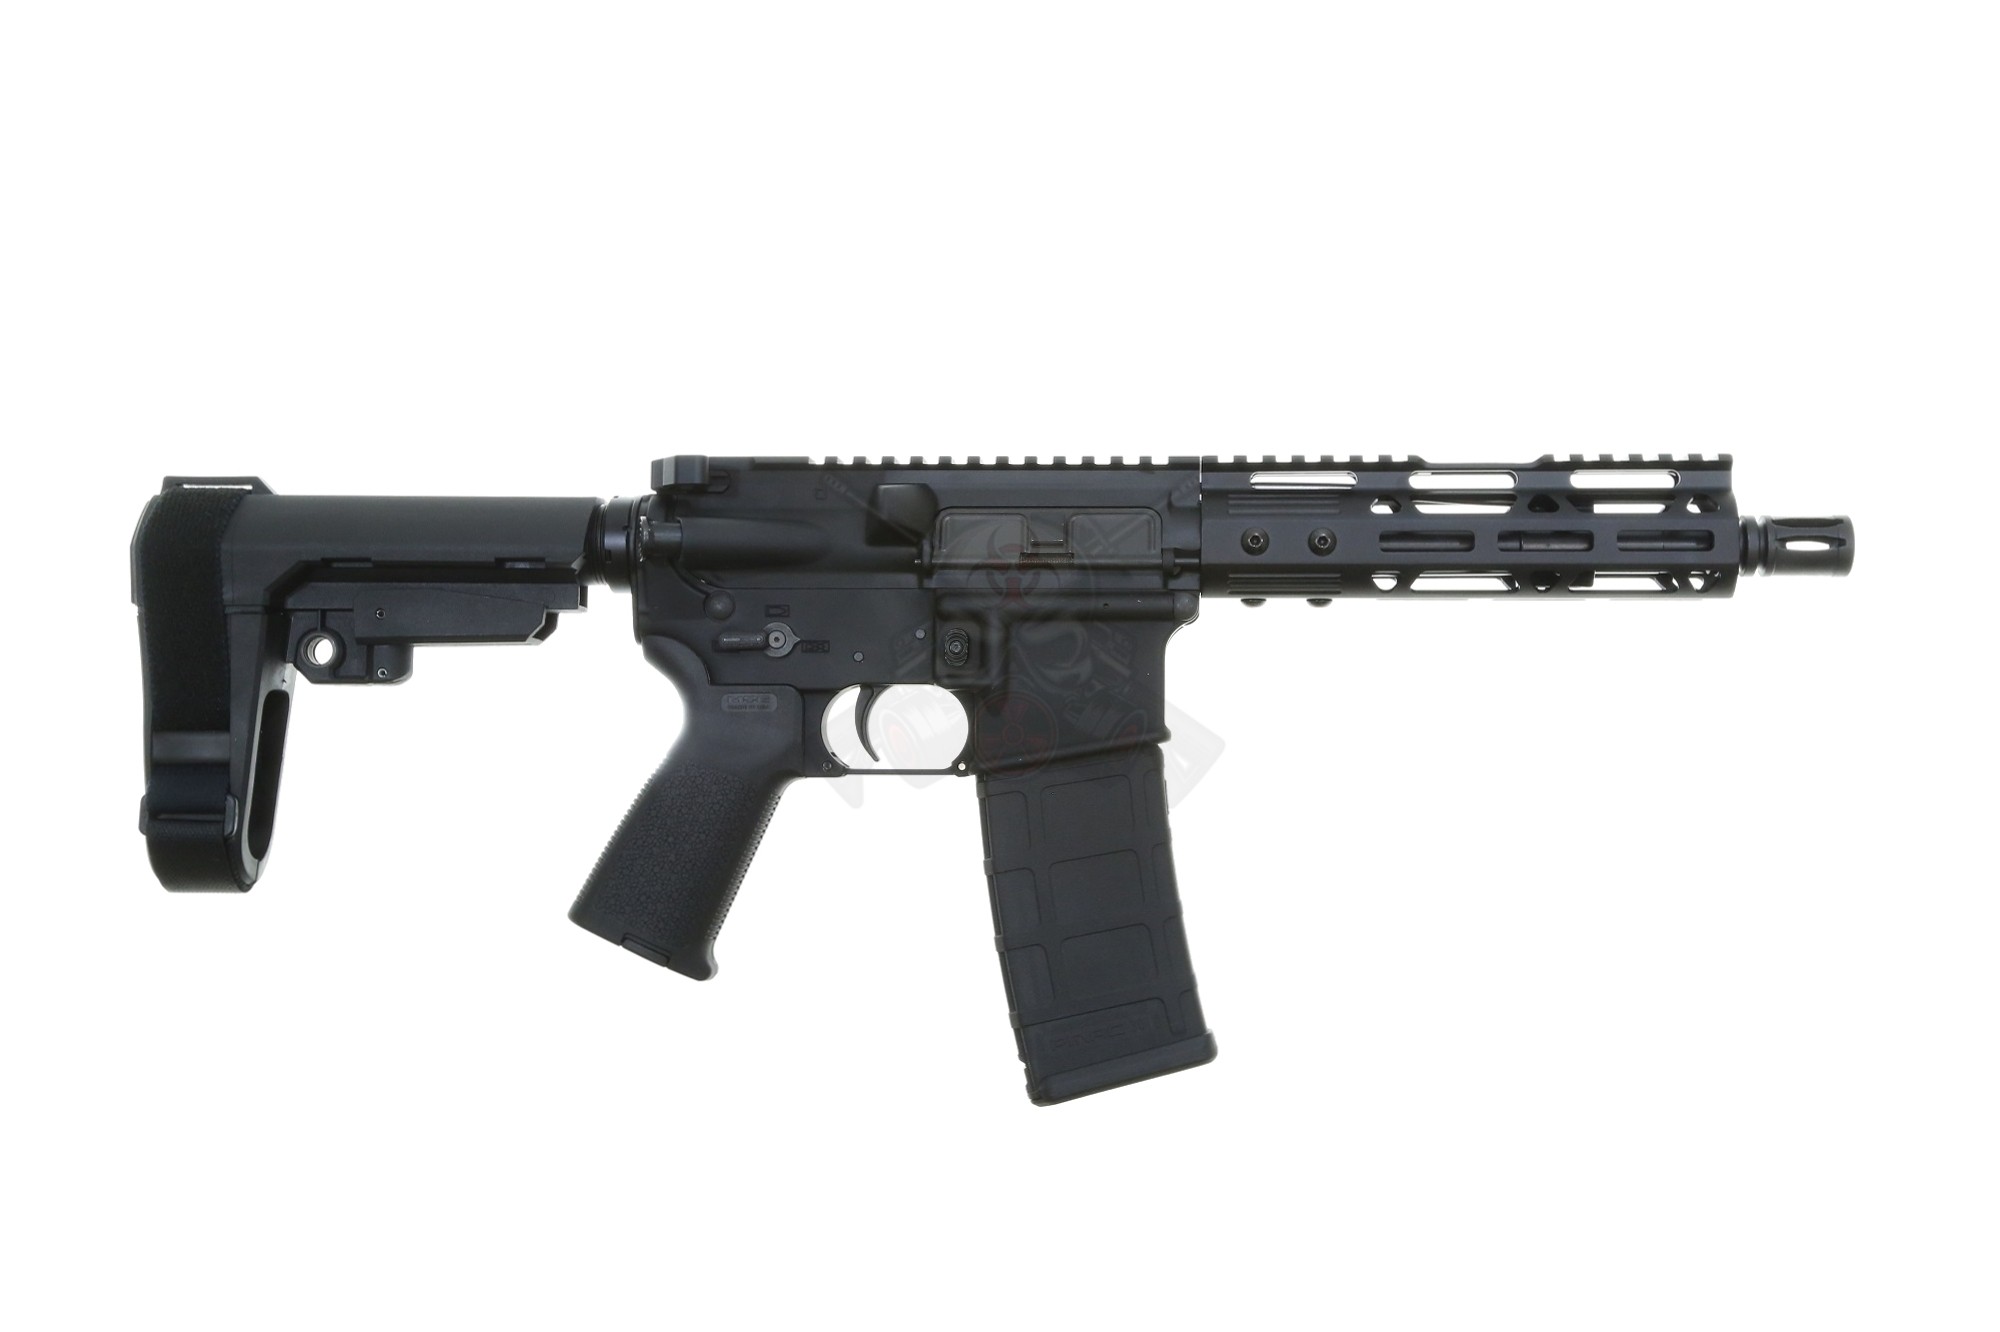 Uno de los rifles preferidos del Cártel de Sinaloa, según los testimonios del "Grande" fue el AR-15.